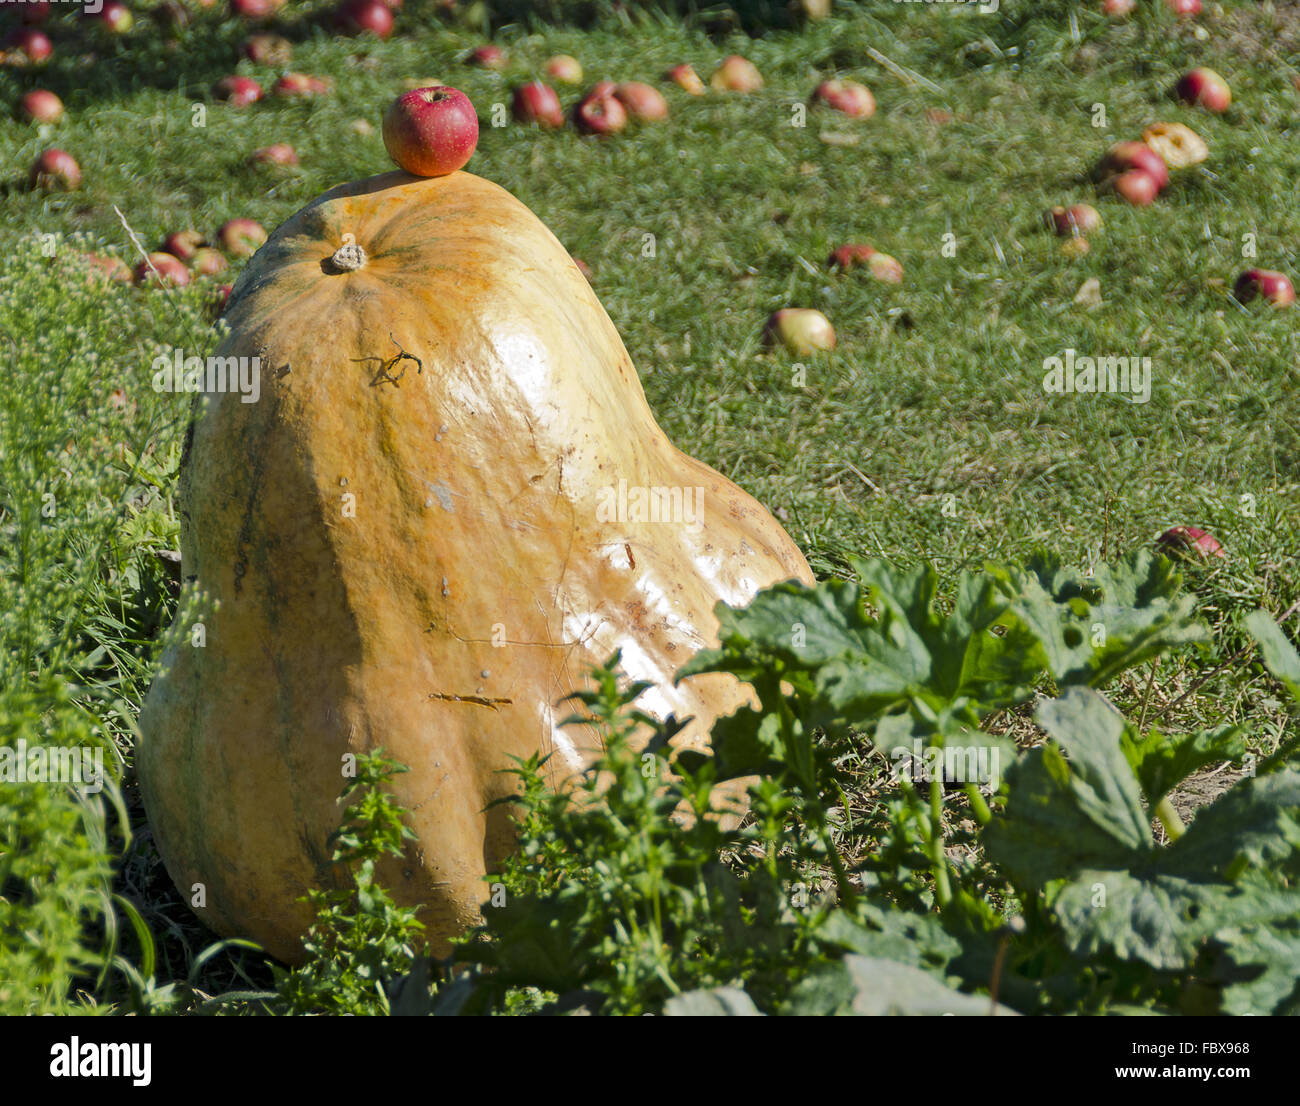 La zucca gigante e prato con le mele Foto Stock